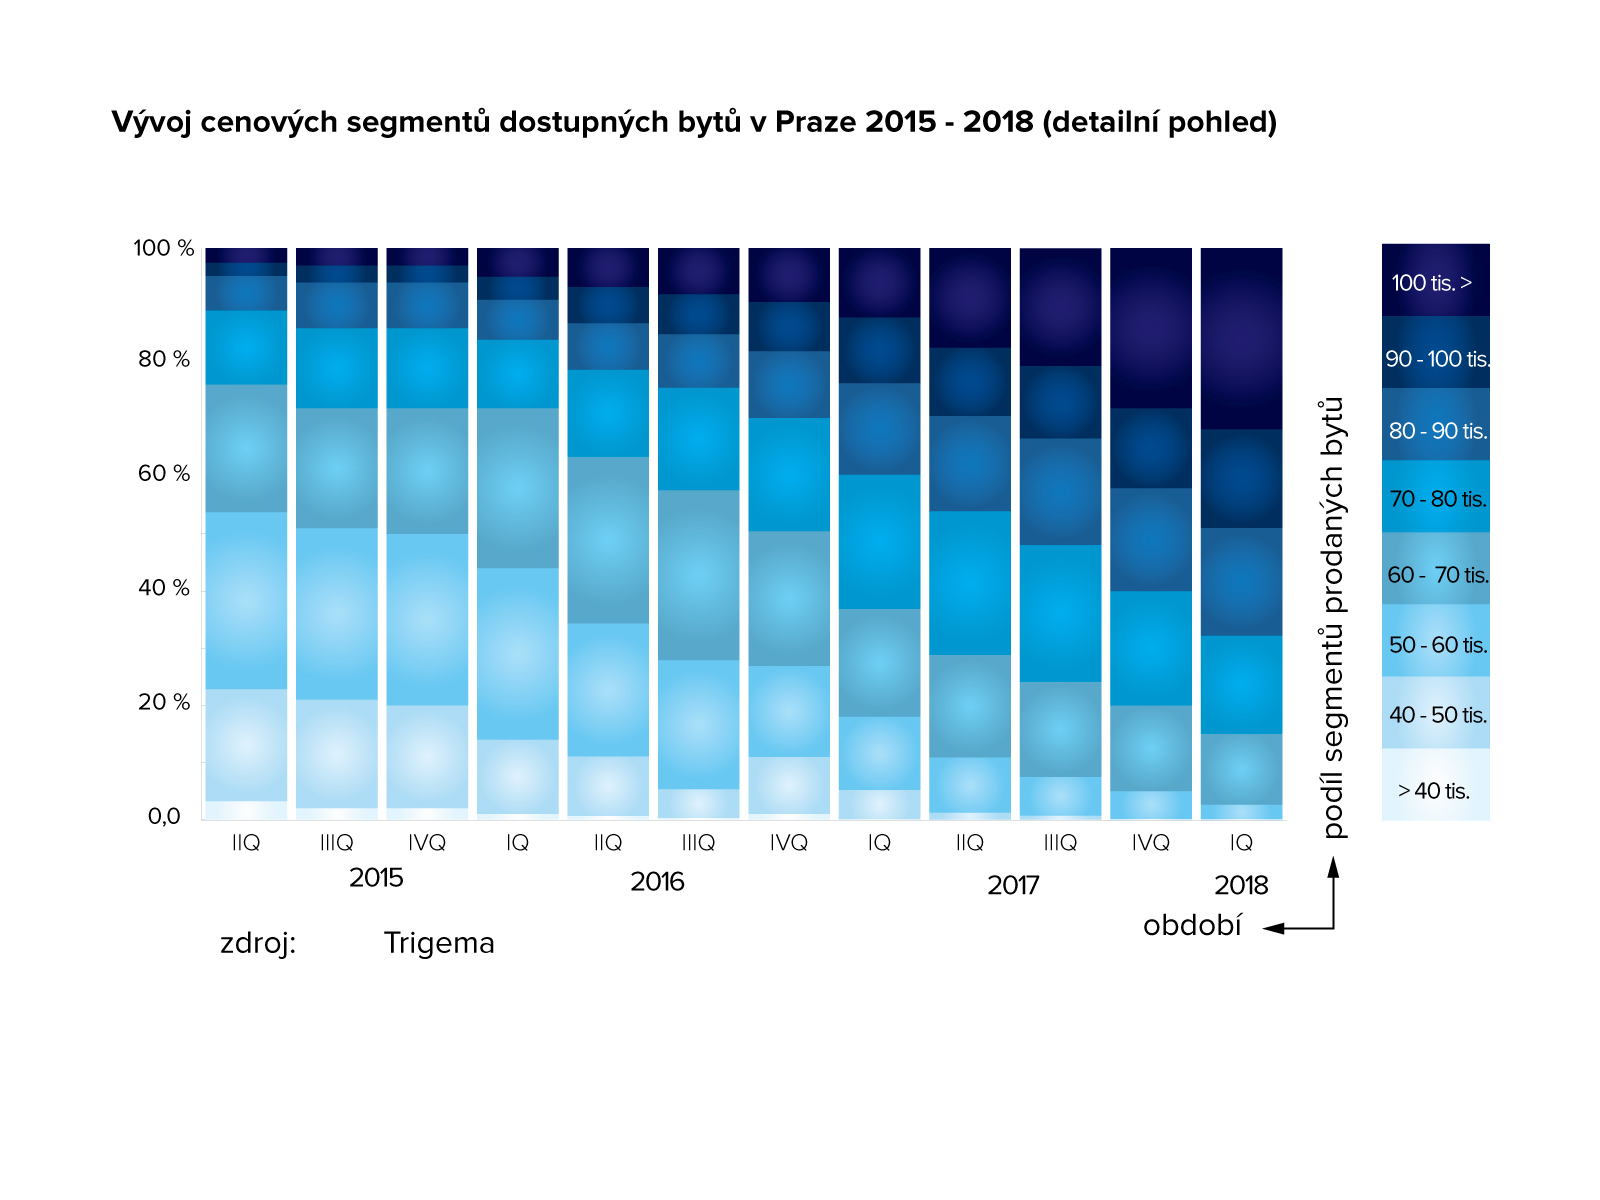 Vývoj cenových segmentů dostupných bytů v Praze 2015 - 2018 (detailní pohled)